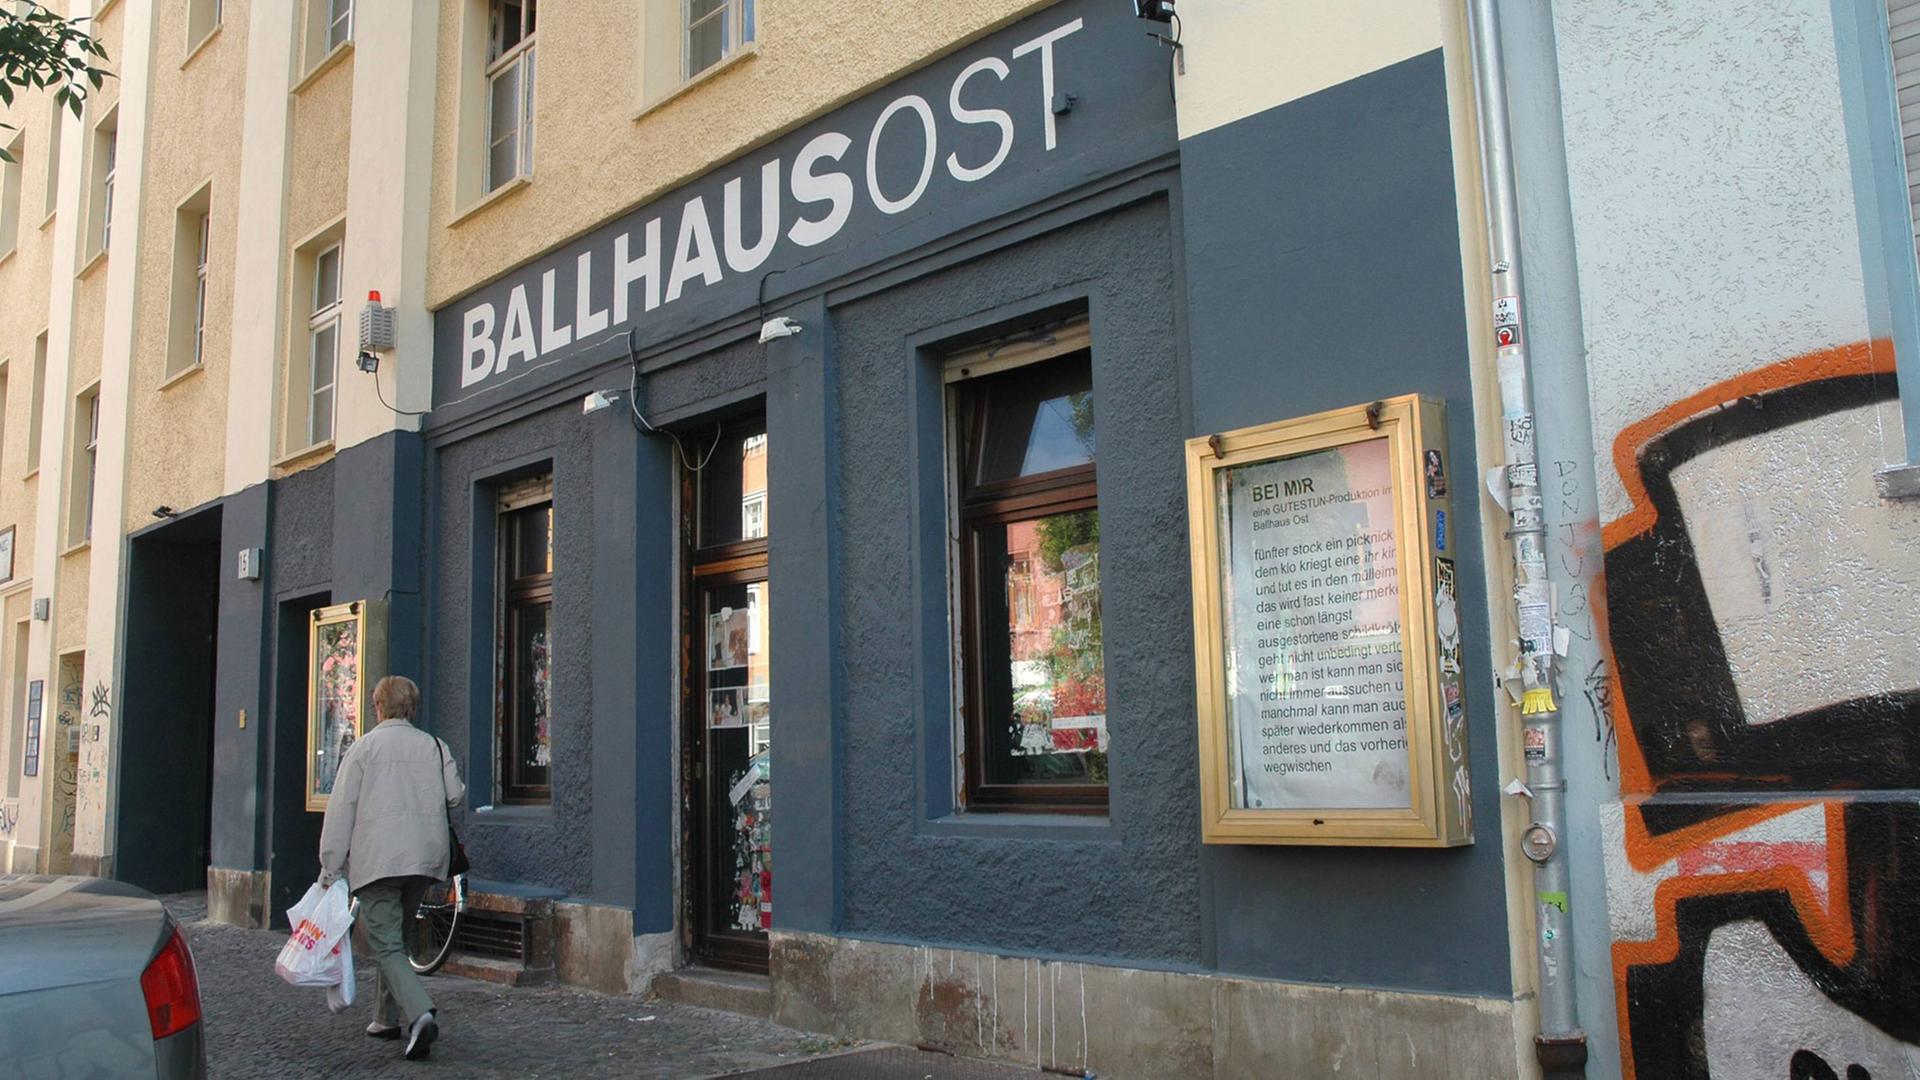 Das Ballhaus Ost in der Pappelallee in Berlin